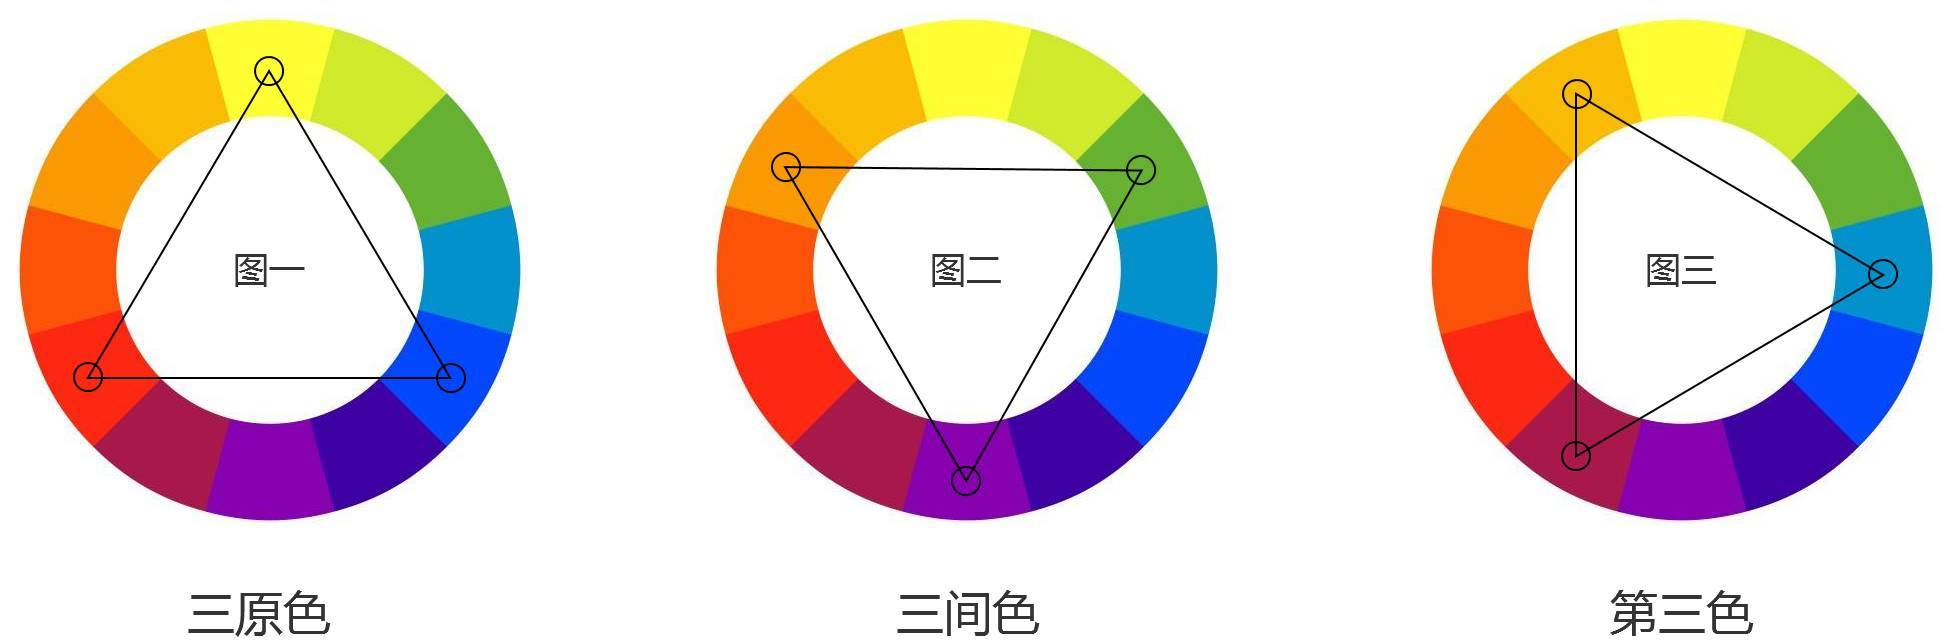 三原色:如下图所示,唯一无法创建的颜色